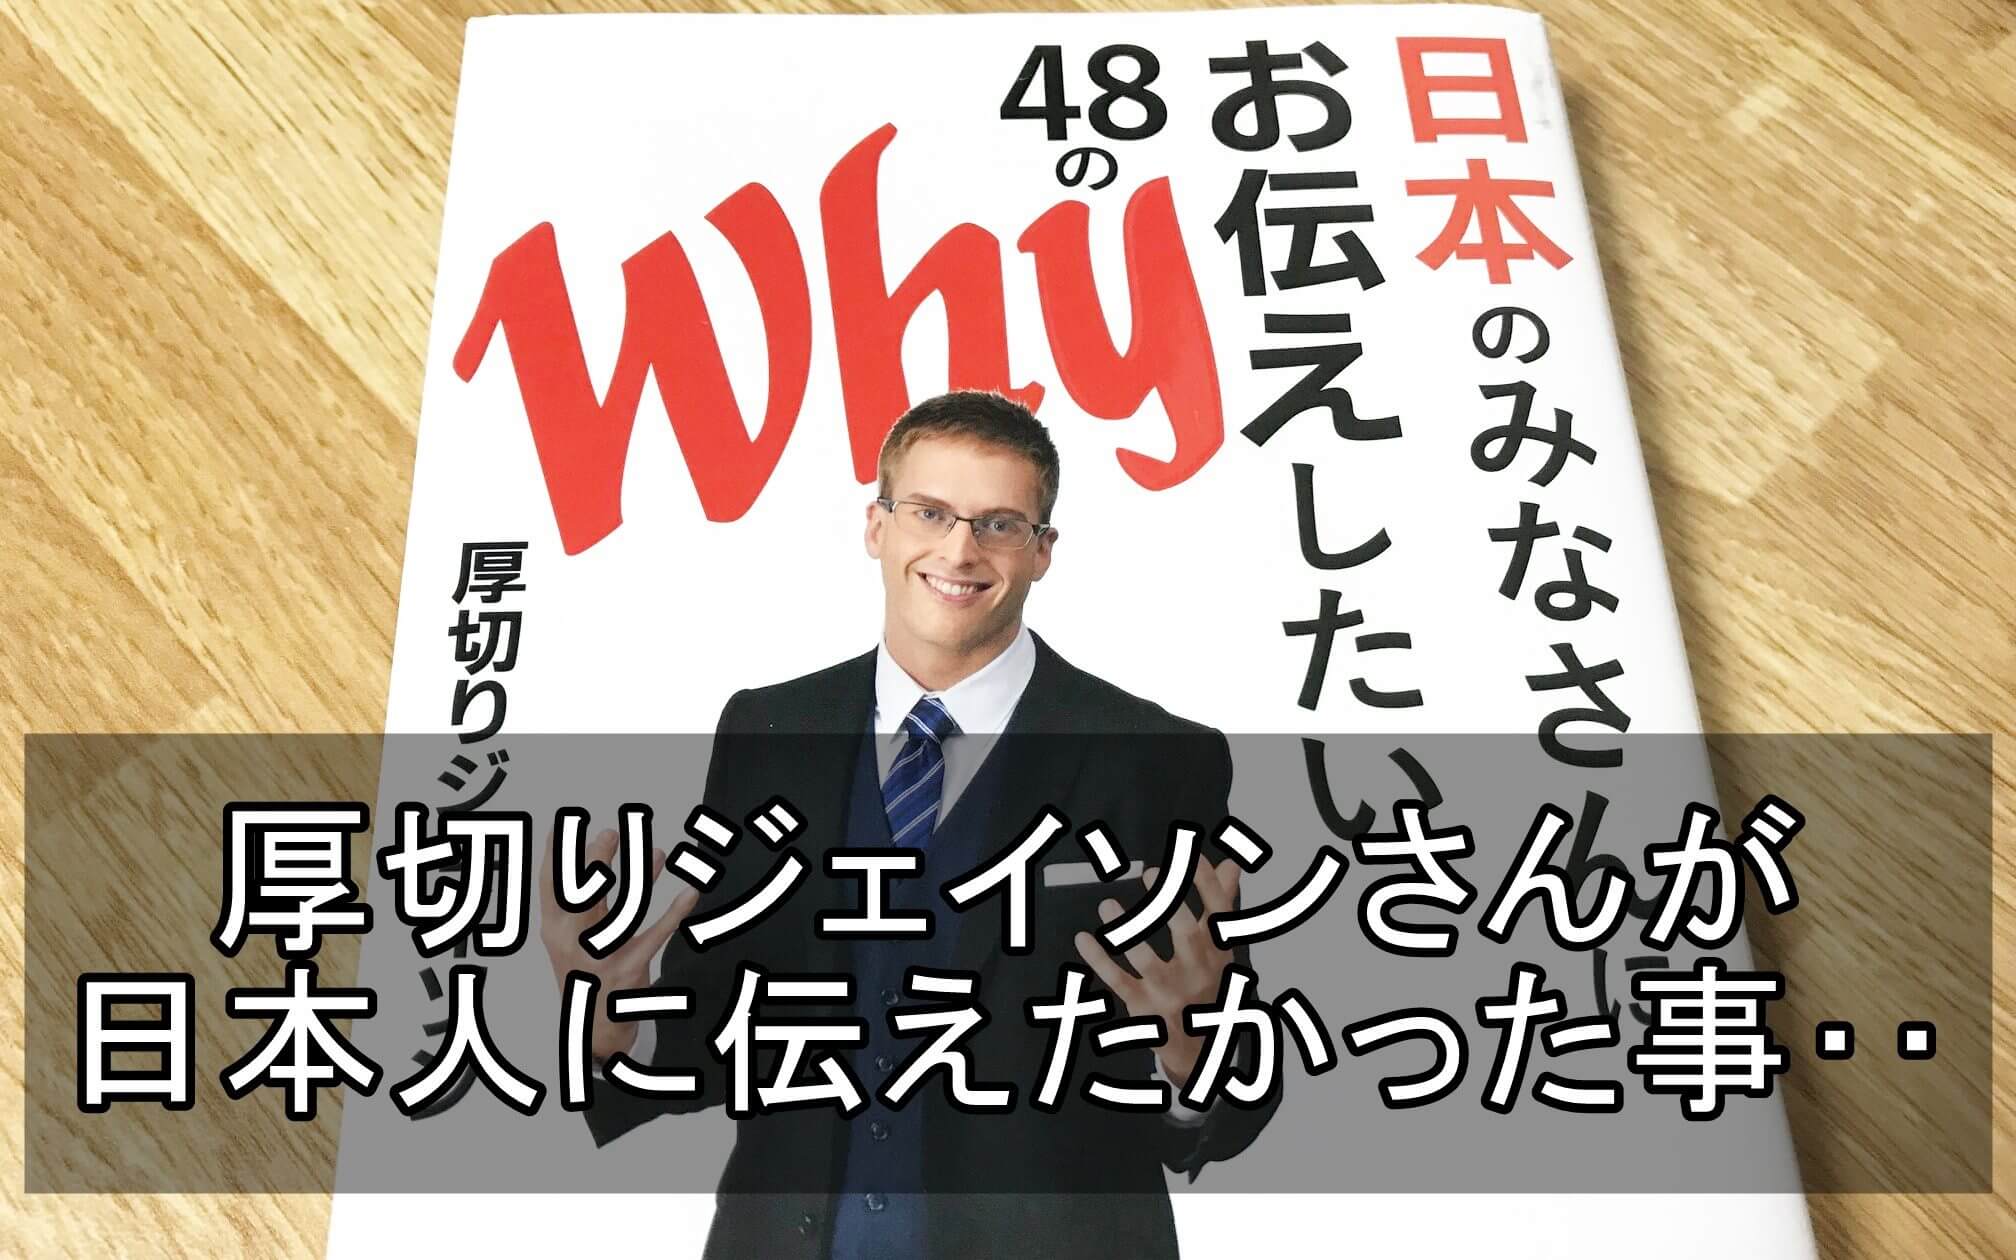 日本 の みなさん に お伝え したい 48 の Why